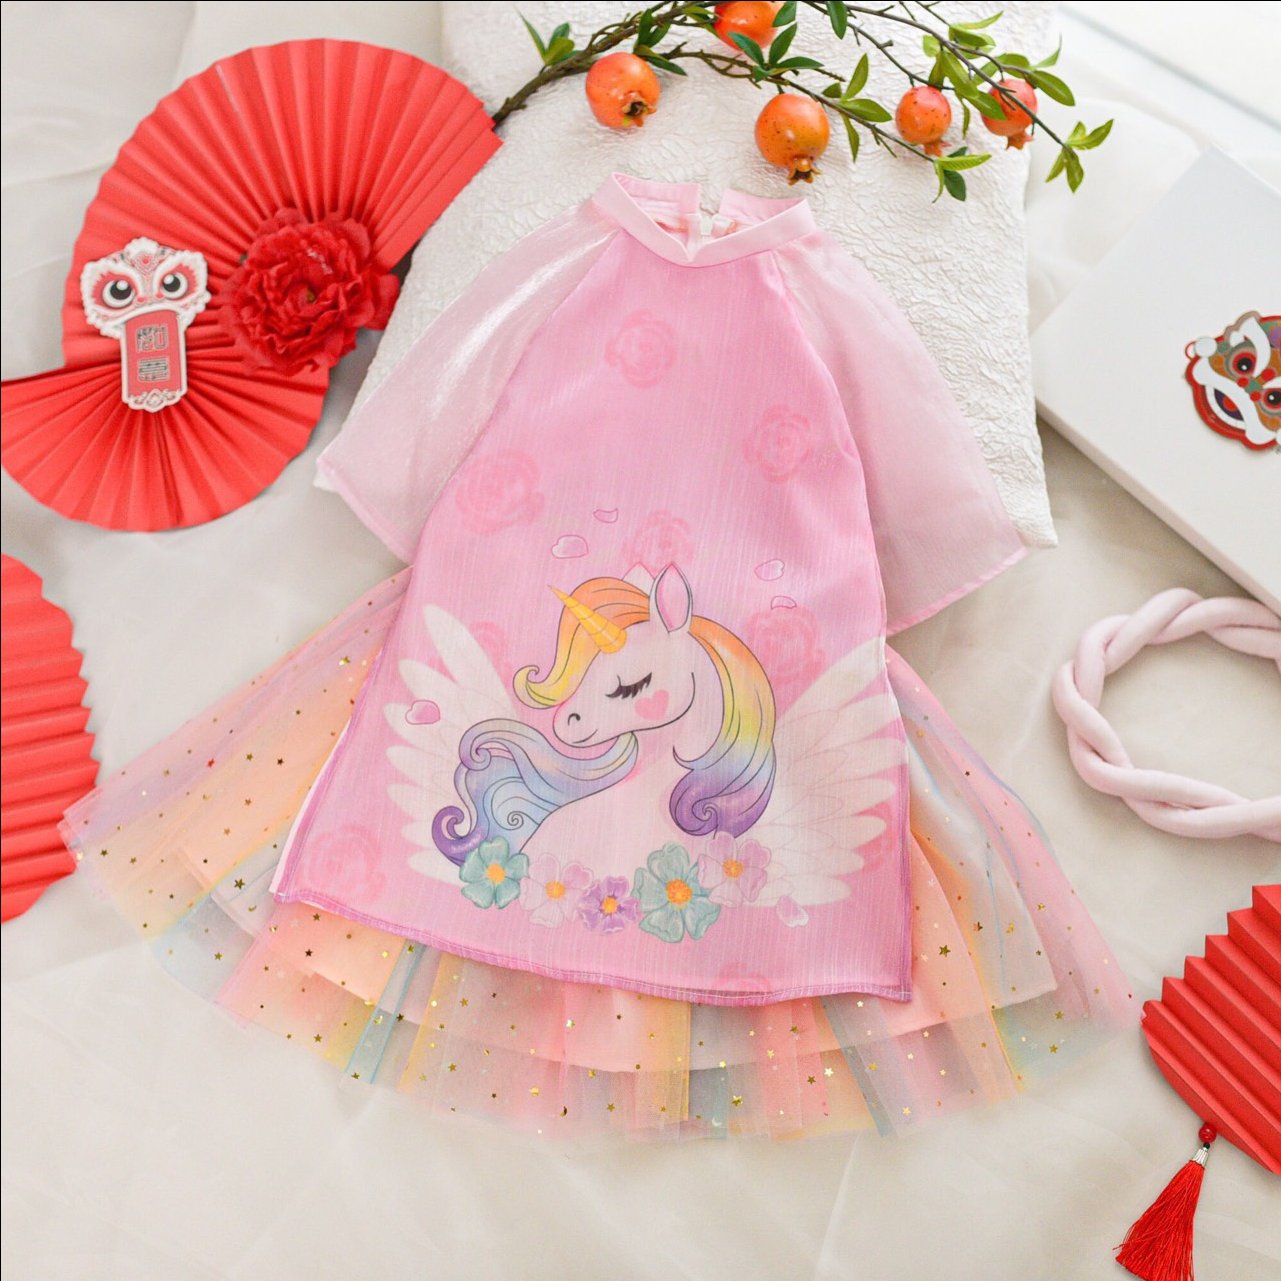 Váy bơi cho bé gái Ylike YY9957 mẫu ngựa Pony Magic màu tím, hồng cam dễ  thương cho bé | Shopee Việt Nam